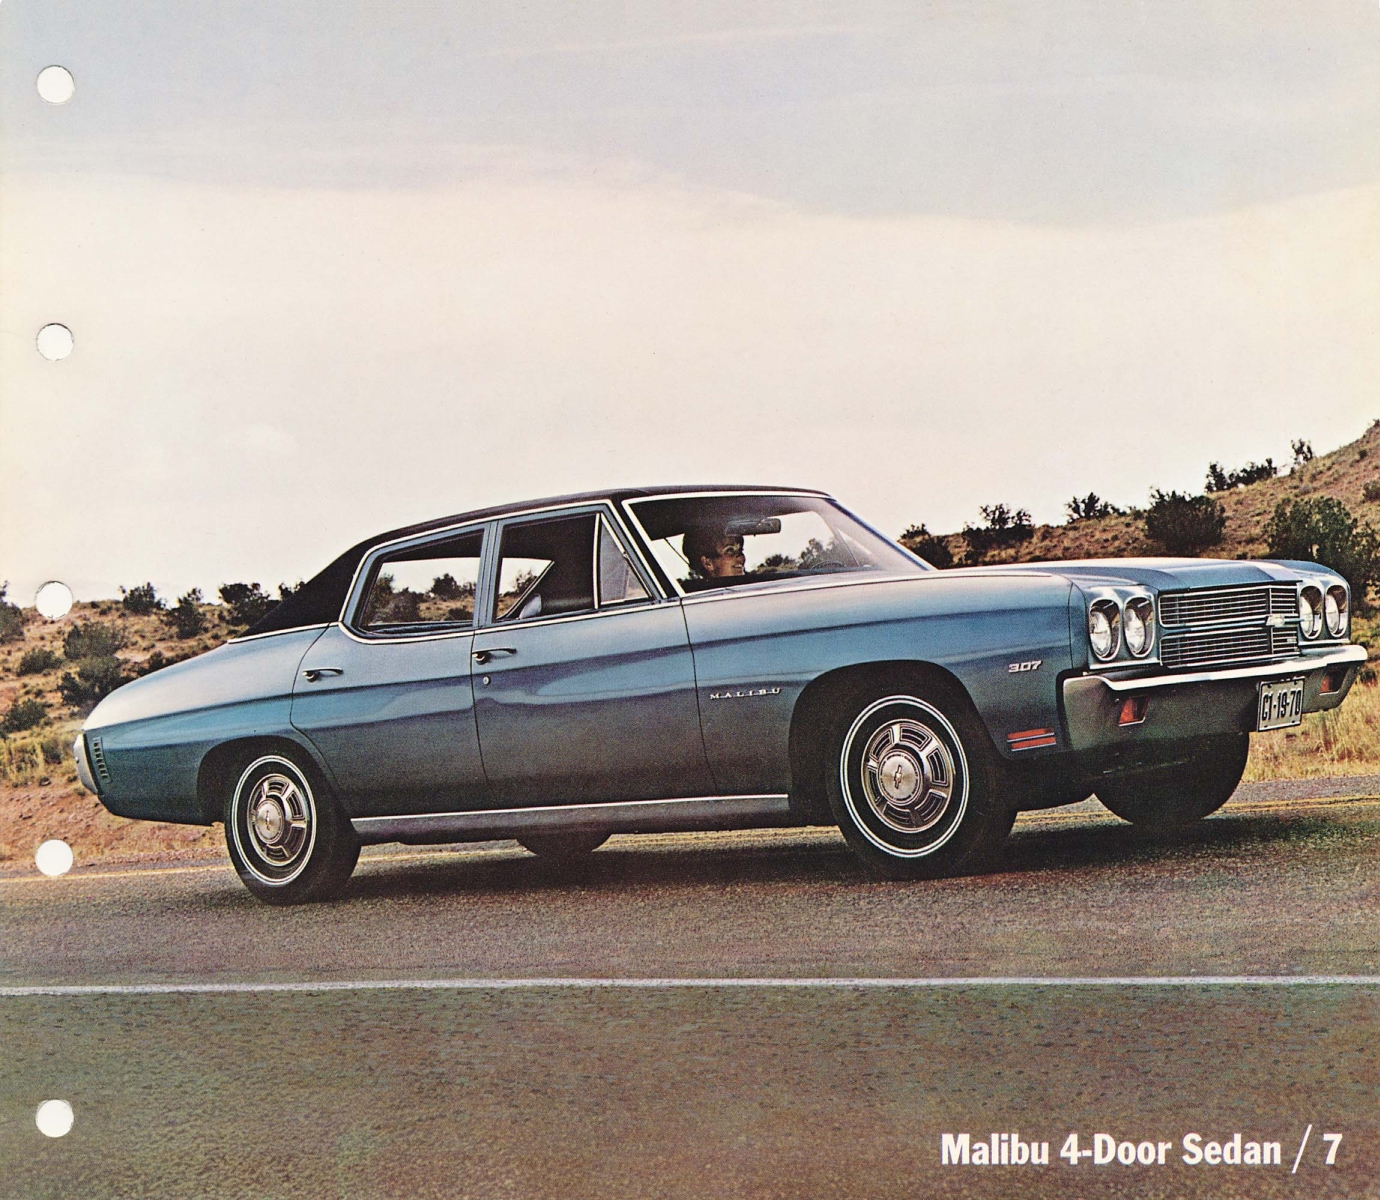 1970_Chevrolet_Dealer_Album-03-07